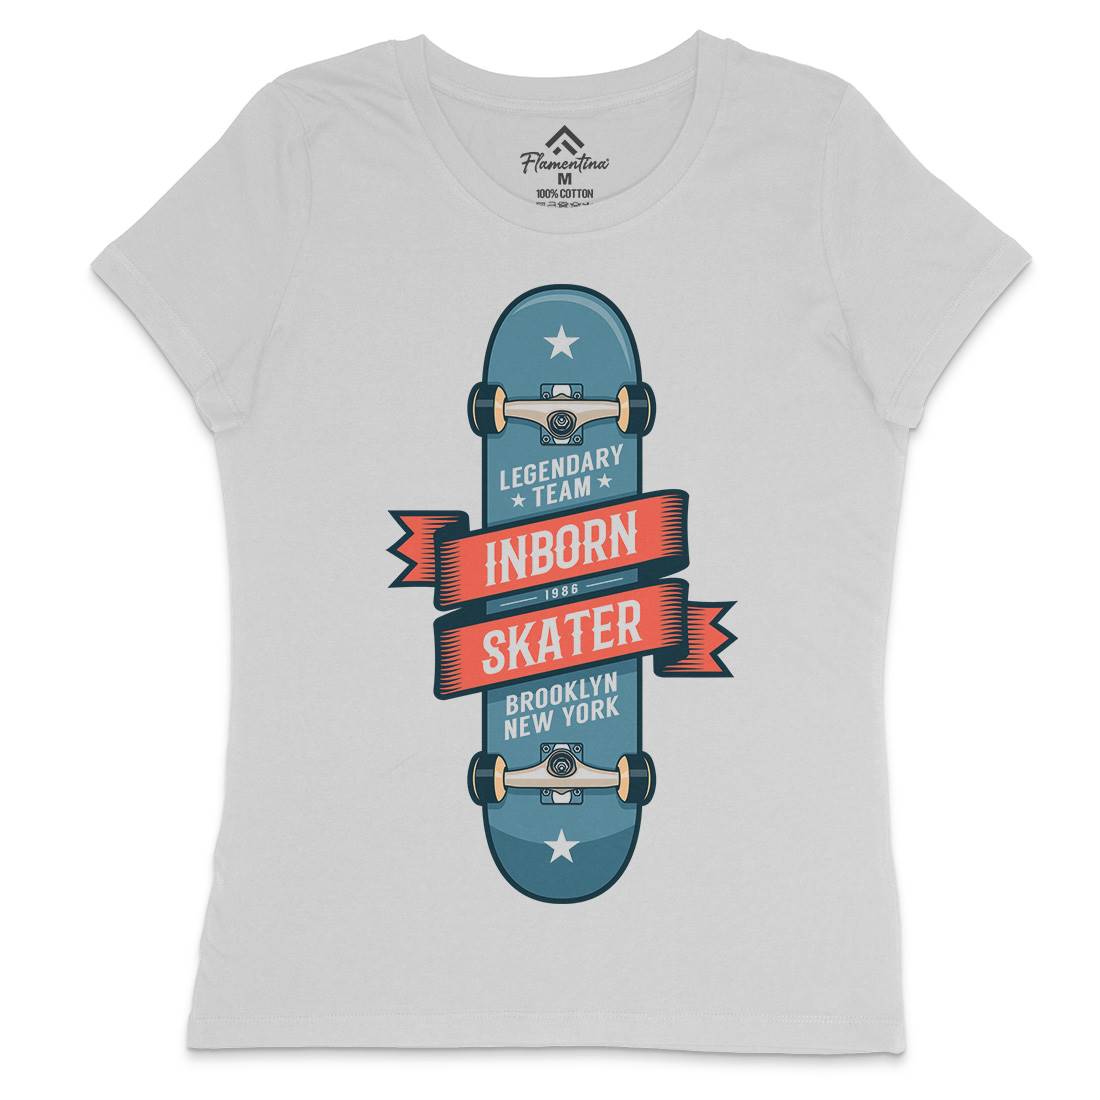 Inborn Skater Womens Crew Neck T-Shirt Skate D895